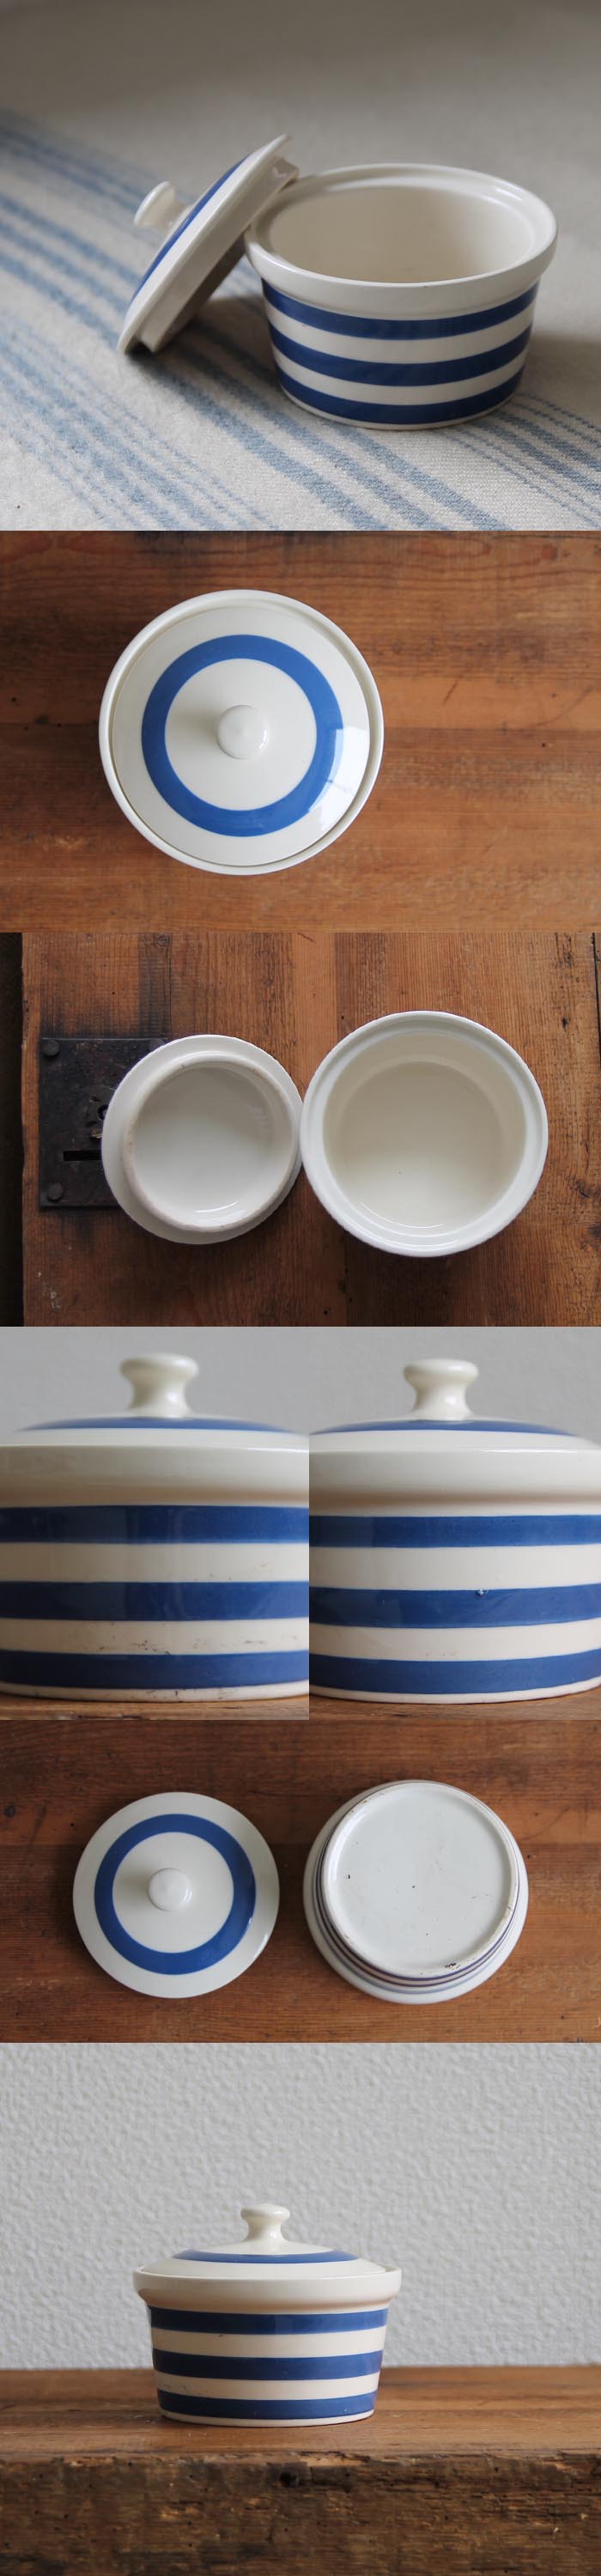 イギリス アンティーク 陶器キャニスター/コーニッシュウェア/食器